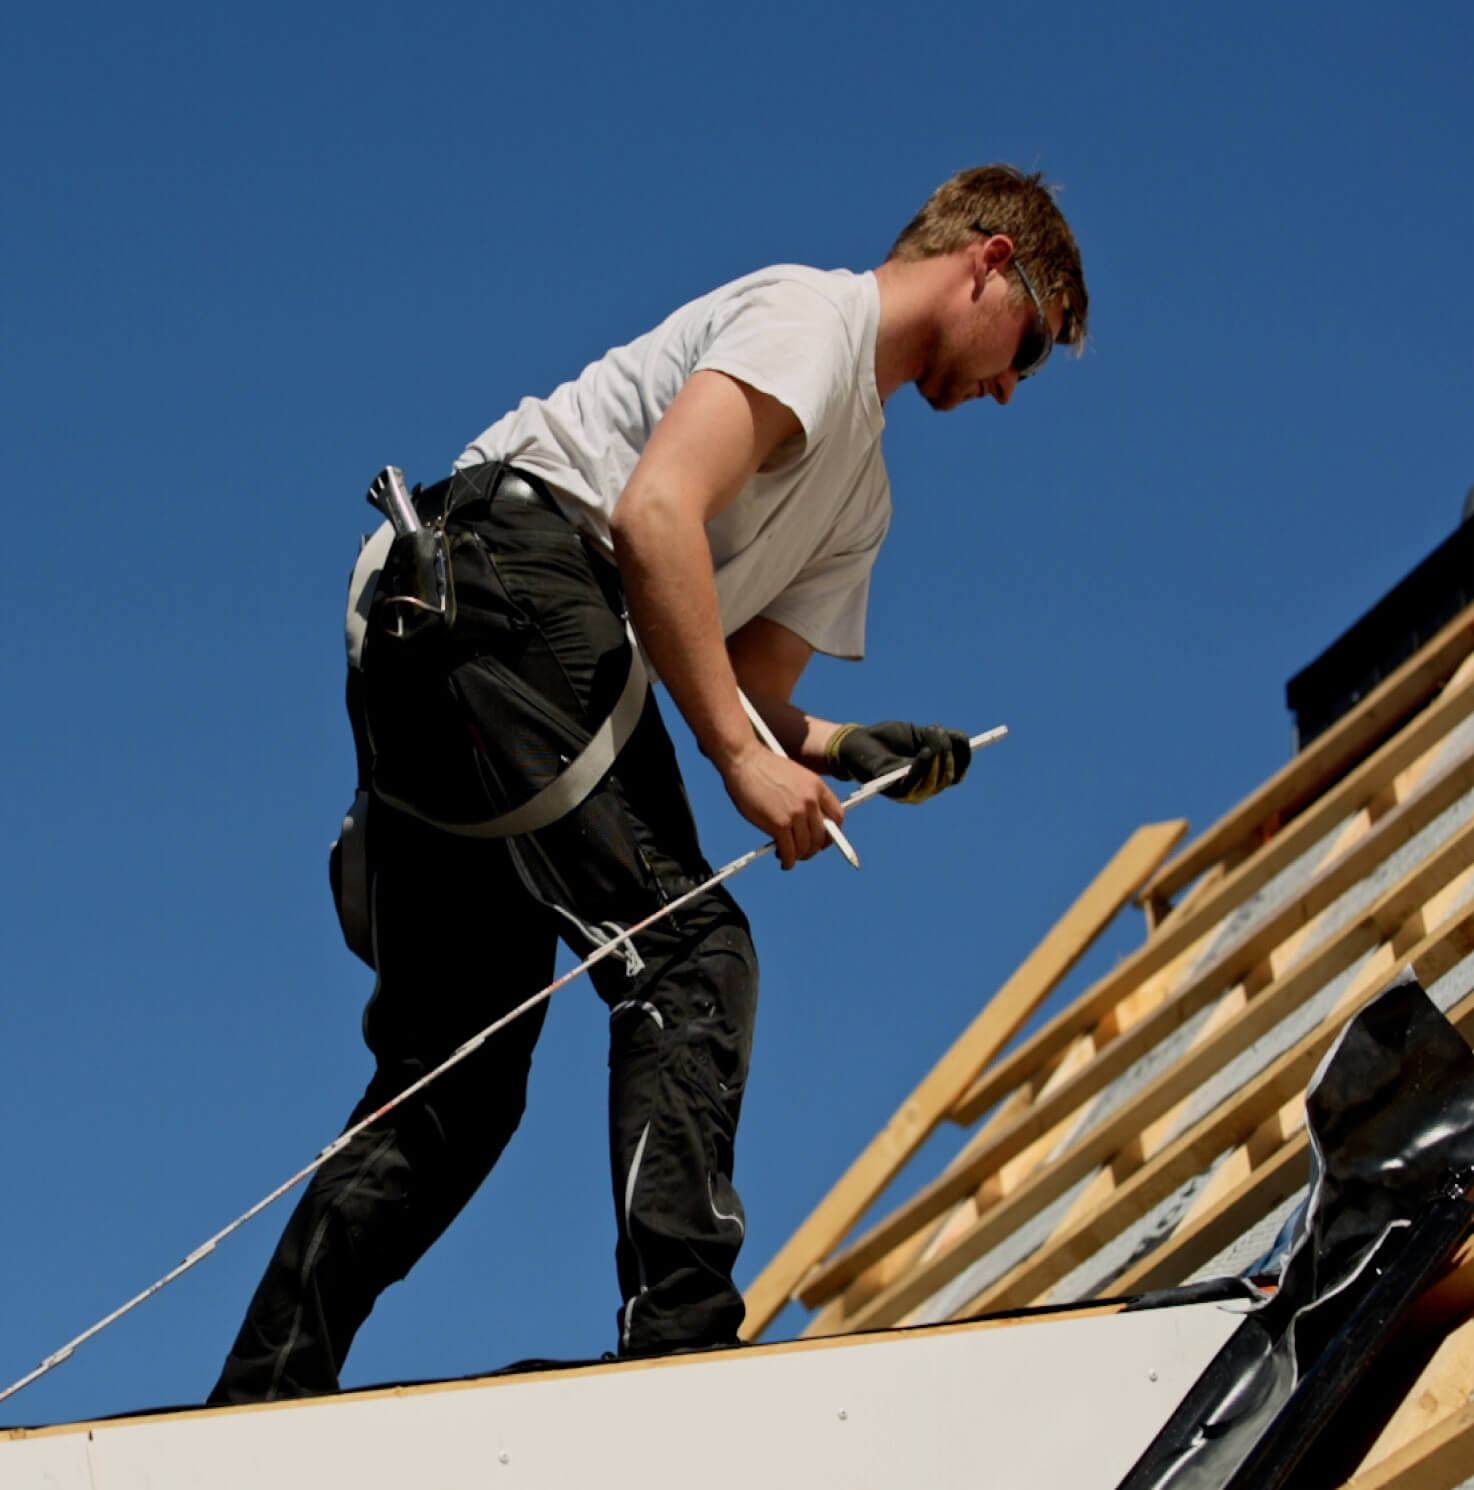 Roofing contractors insurance